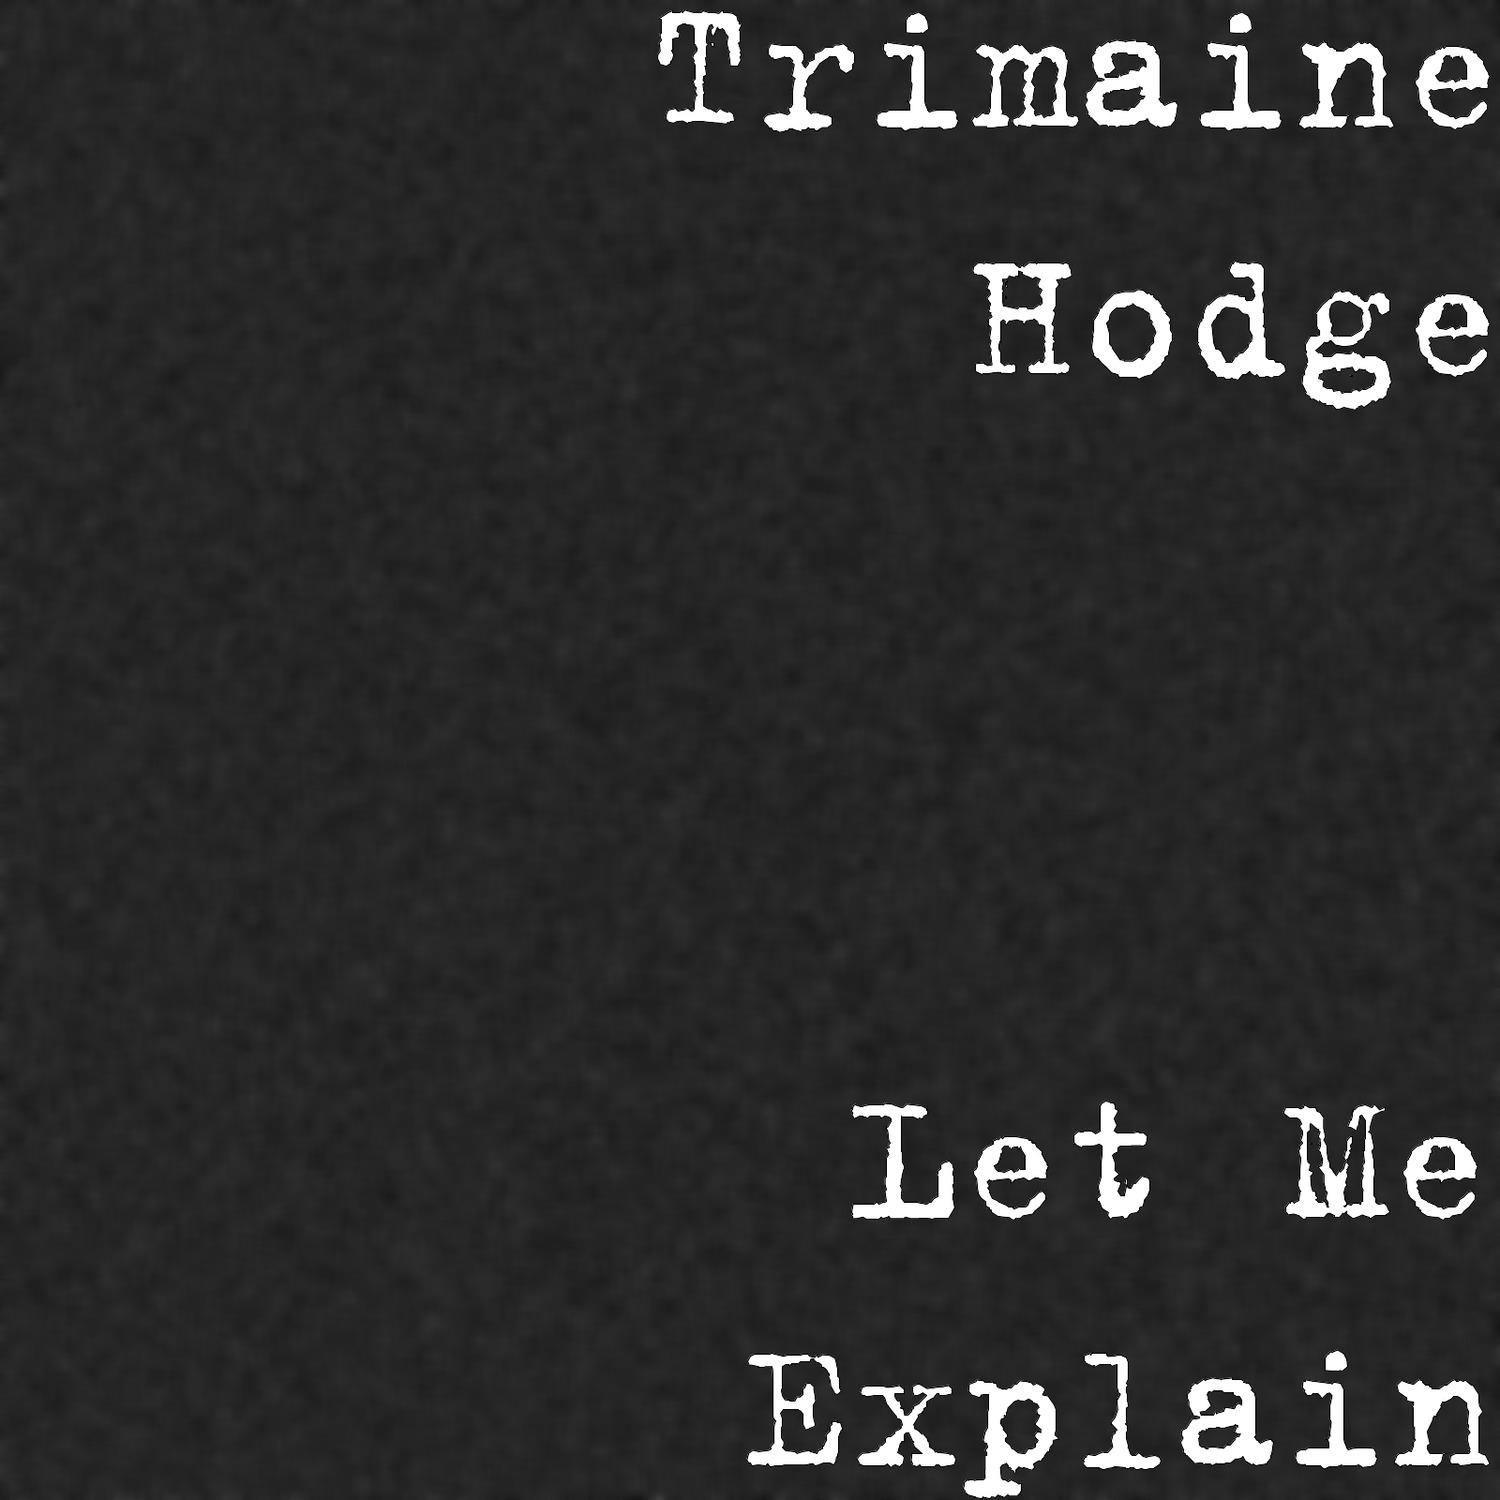 Trimaine Hodge - Let Me Explain